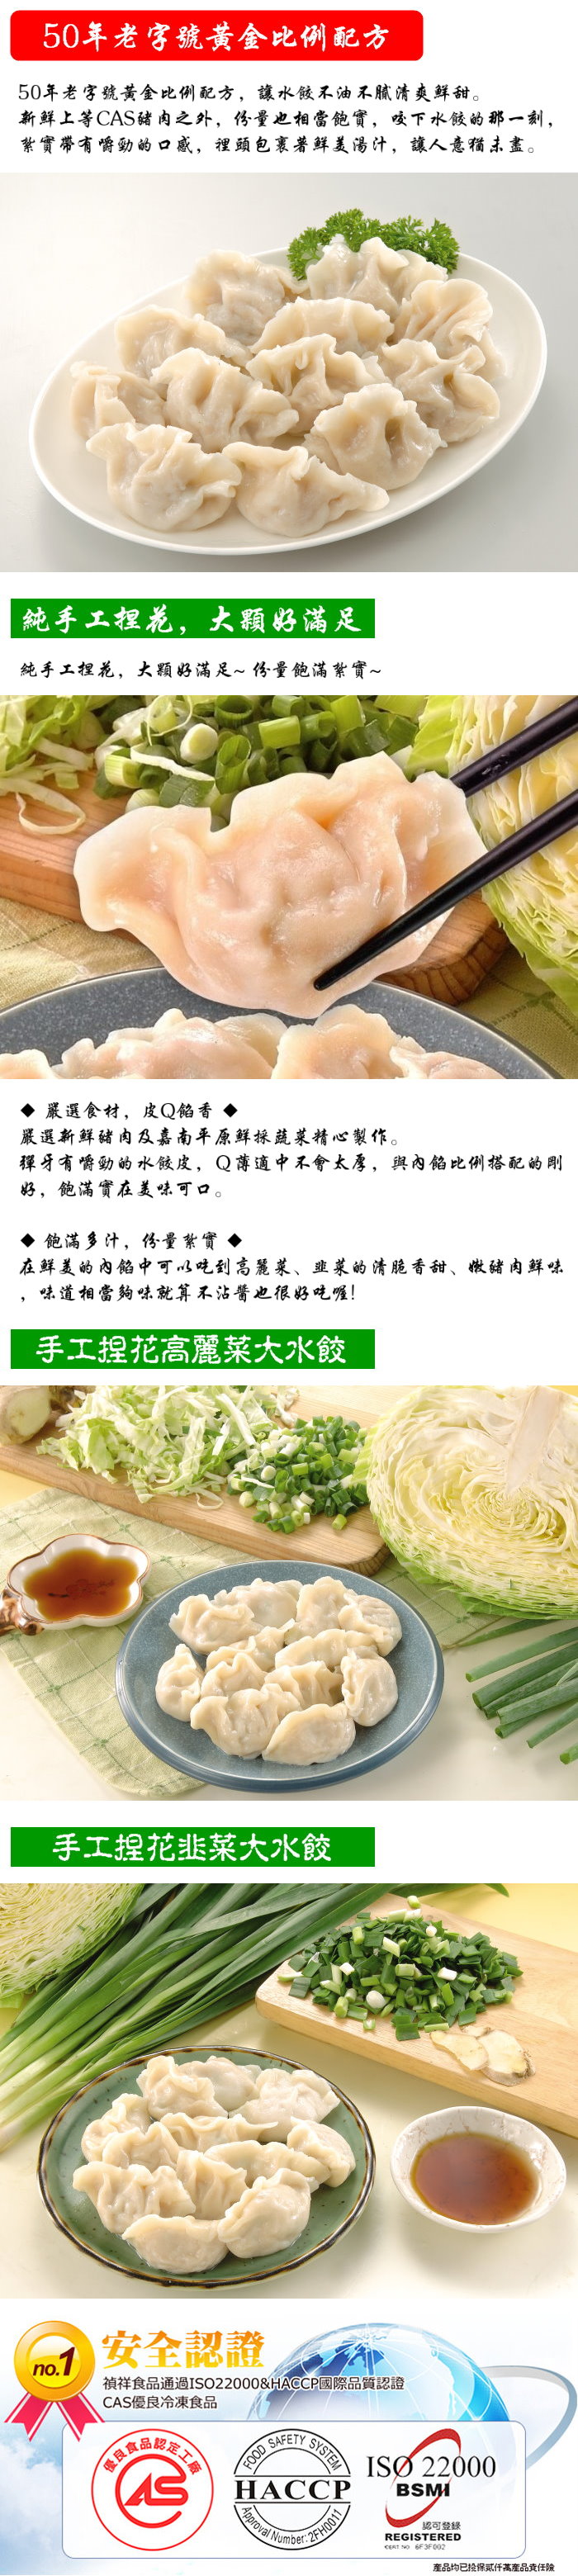 【禎祥食品】手工捏花大水餃-高麗菜+韭菜 任選(共3包約120粒)